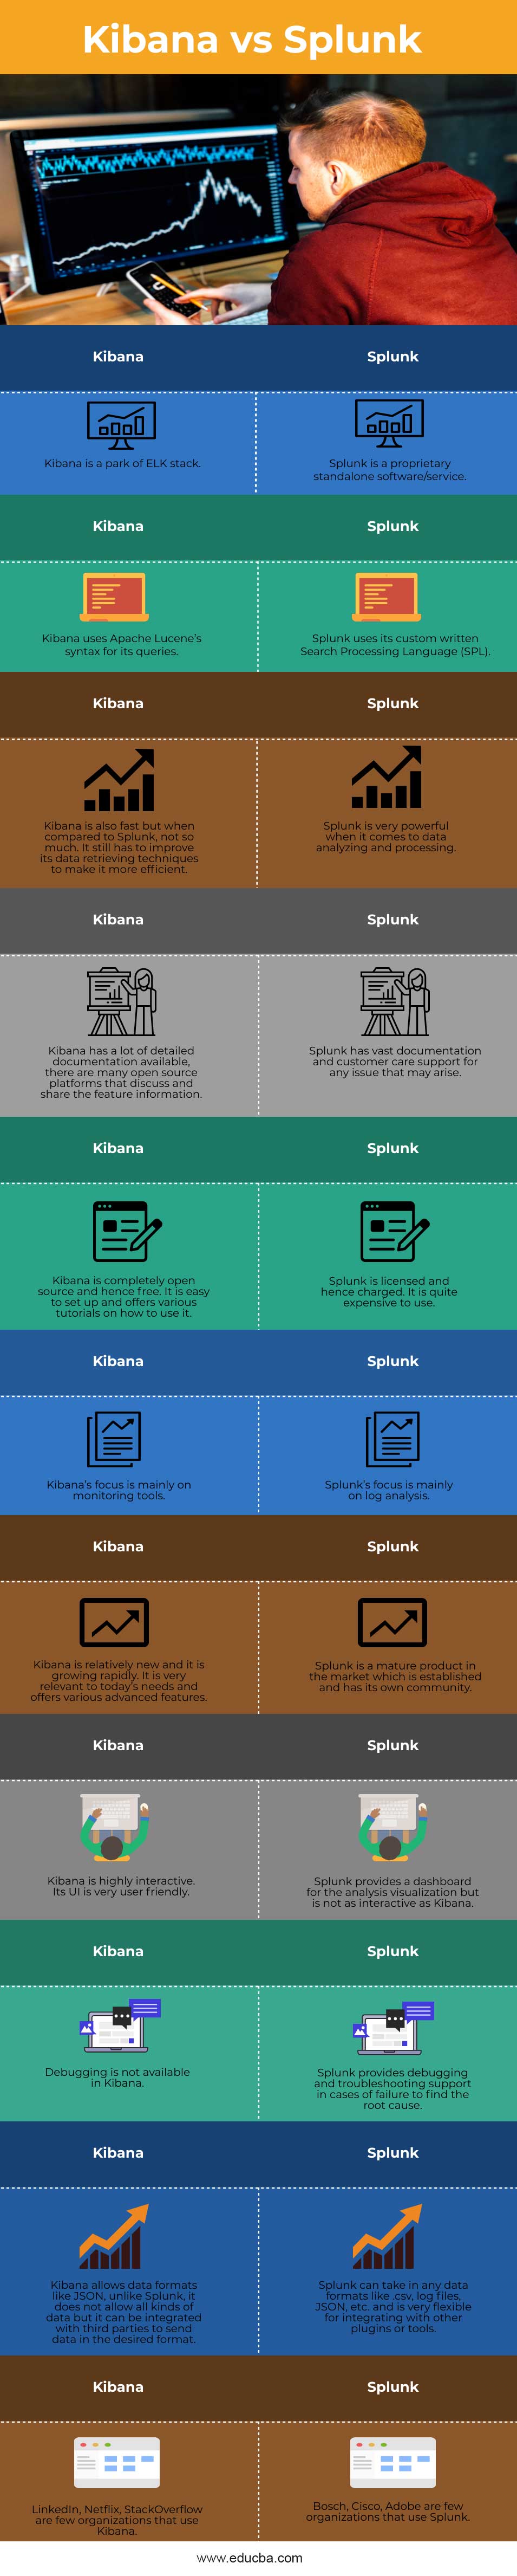 kibana-vs-splunk-info